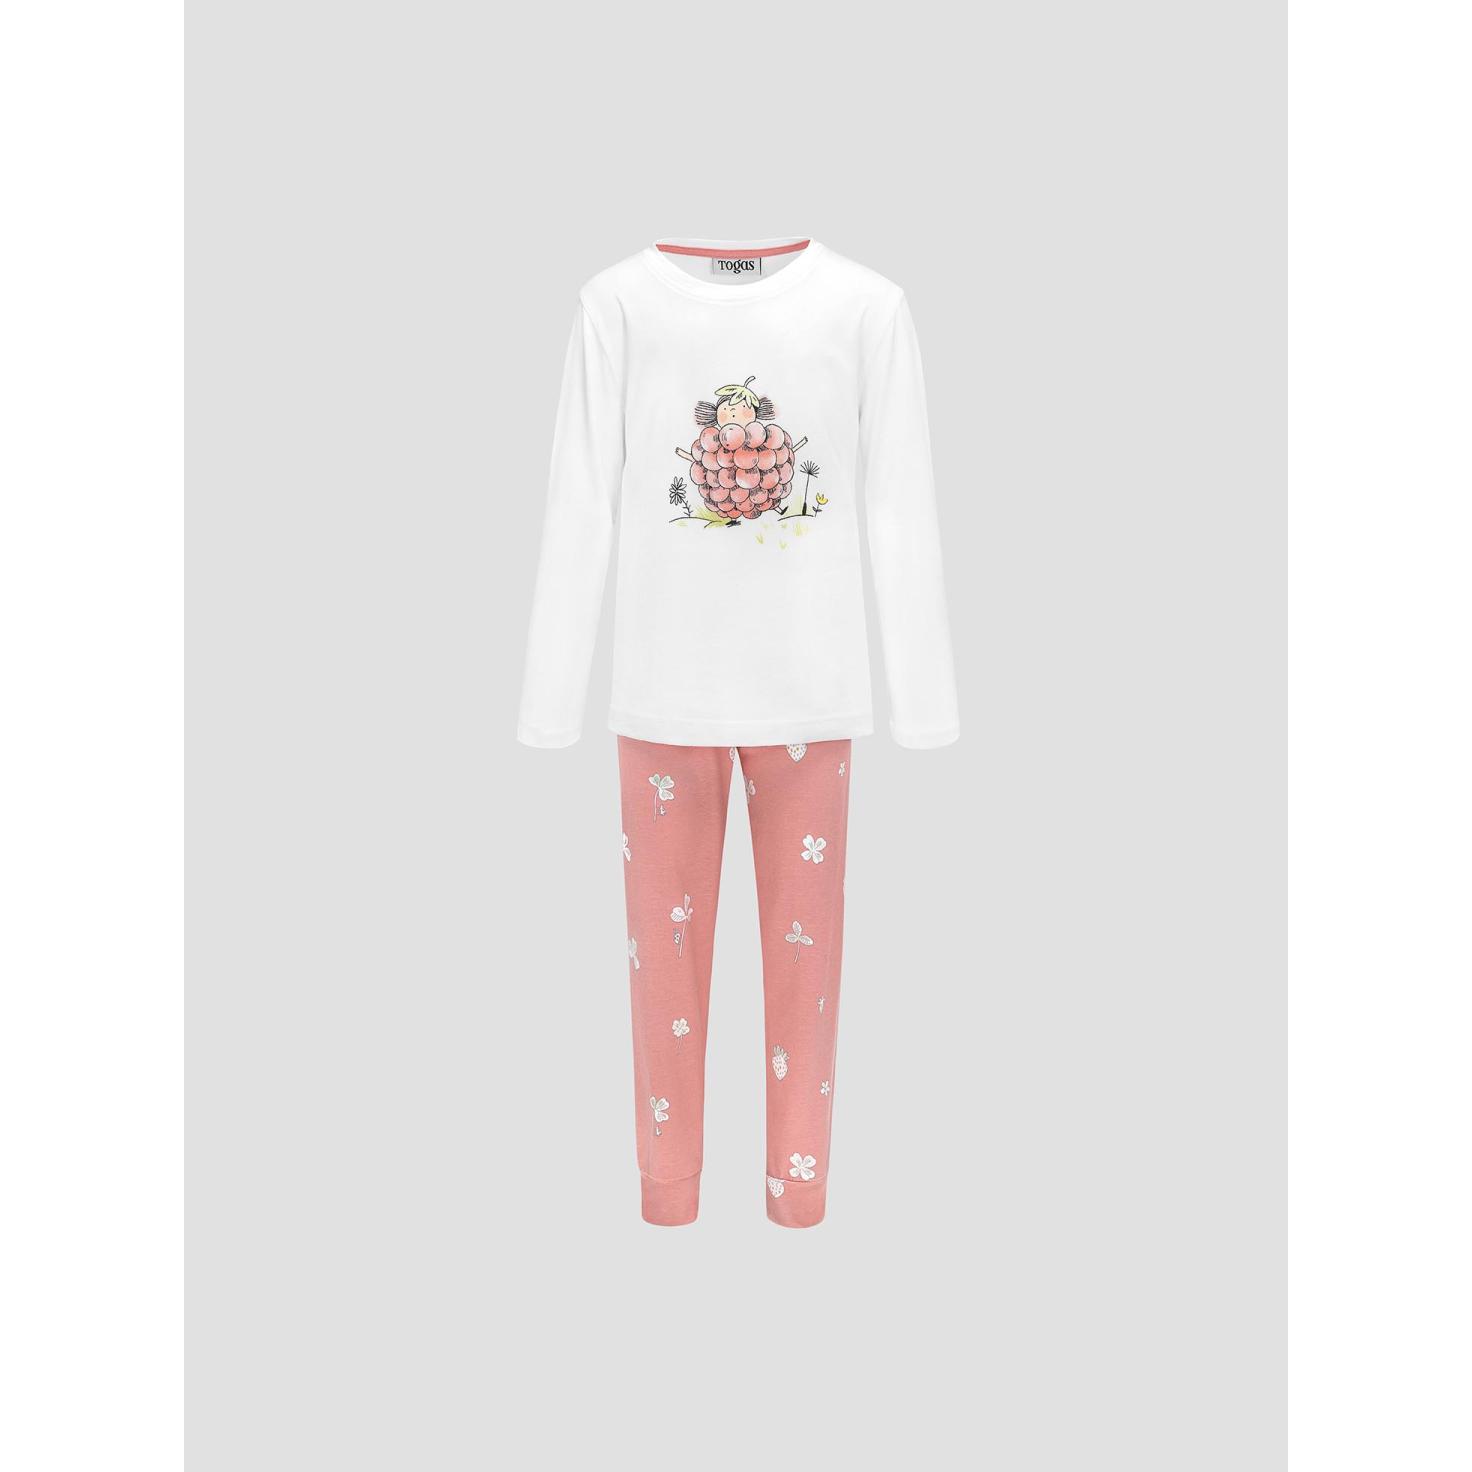 Пижама для девочек Kids by togas Стробби бело-розовый 92-98 см пижама togas эсме бело сиреневая женская